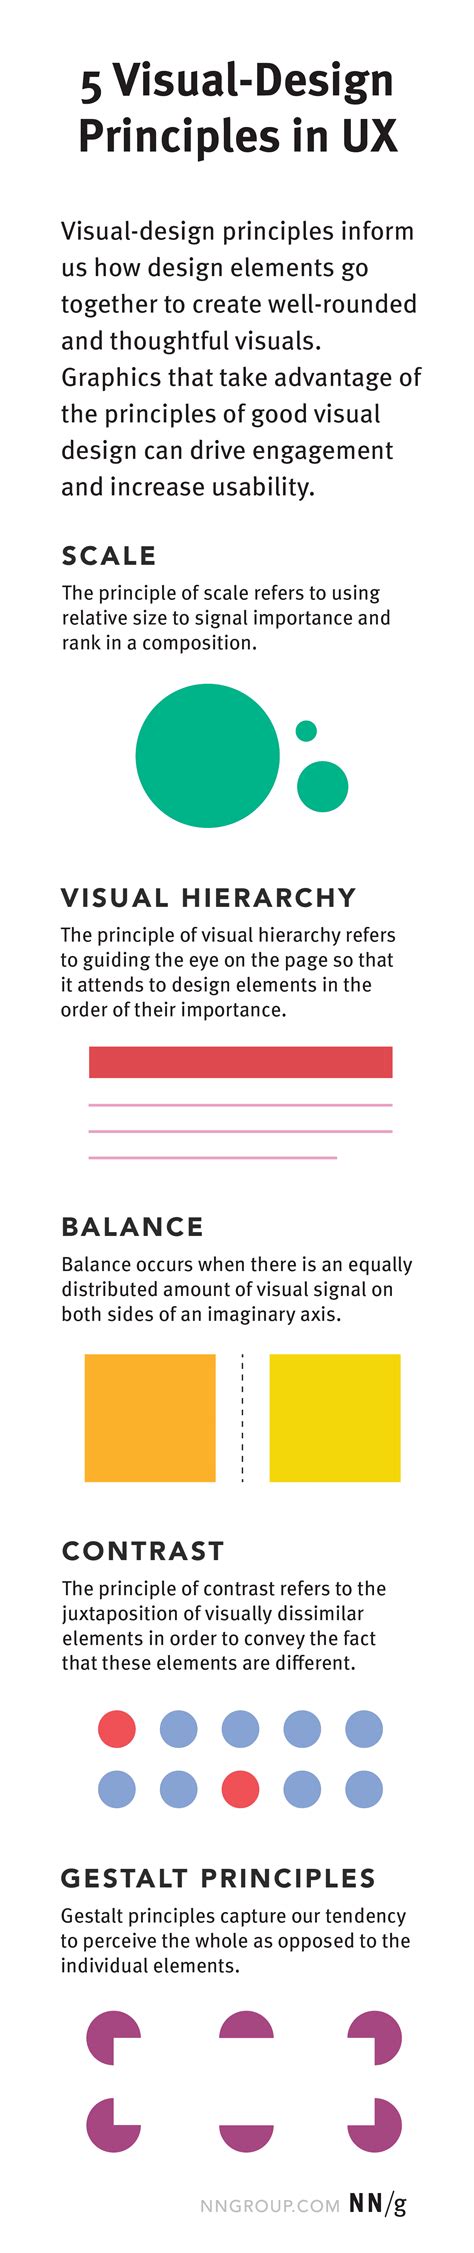 5 Principles Of Visual Design In Ux